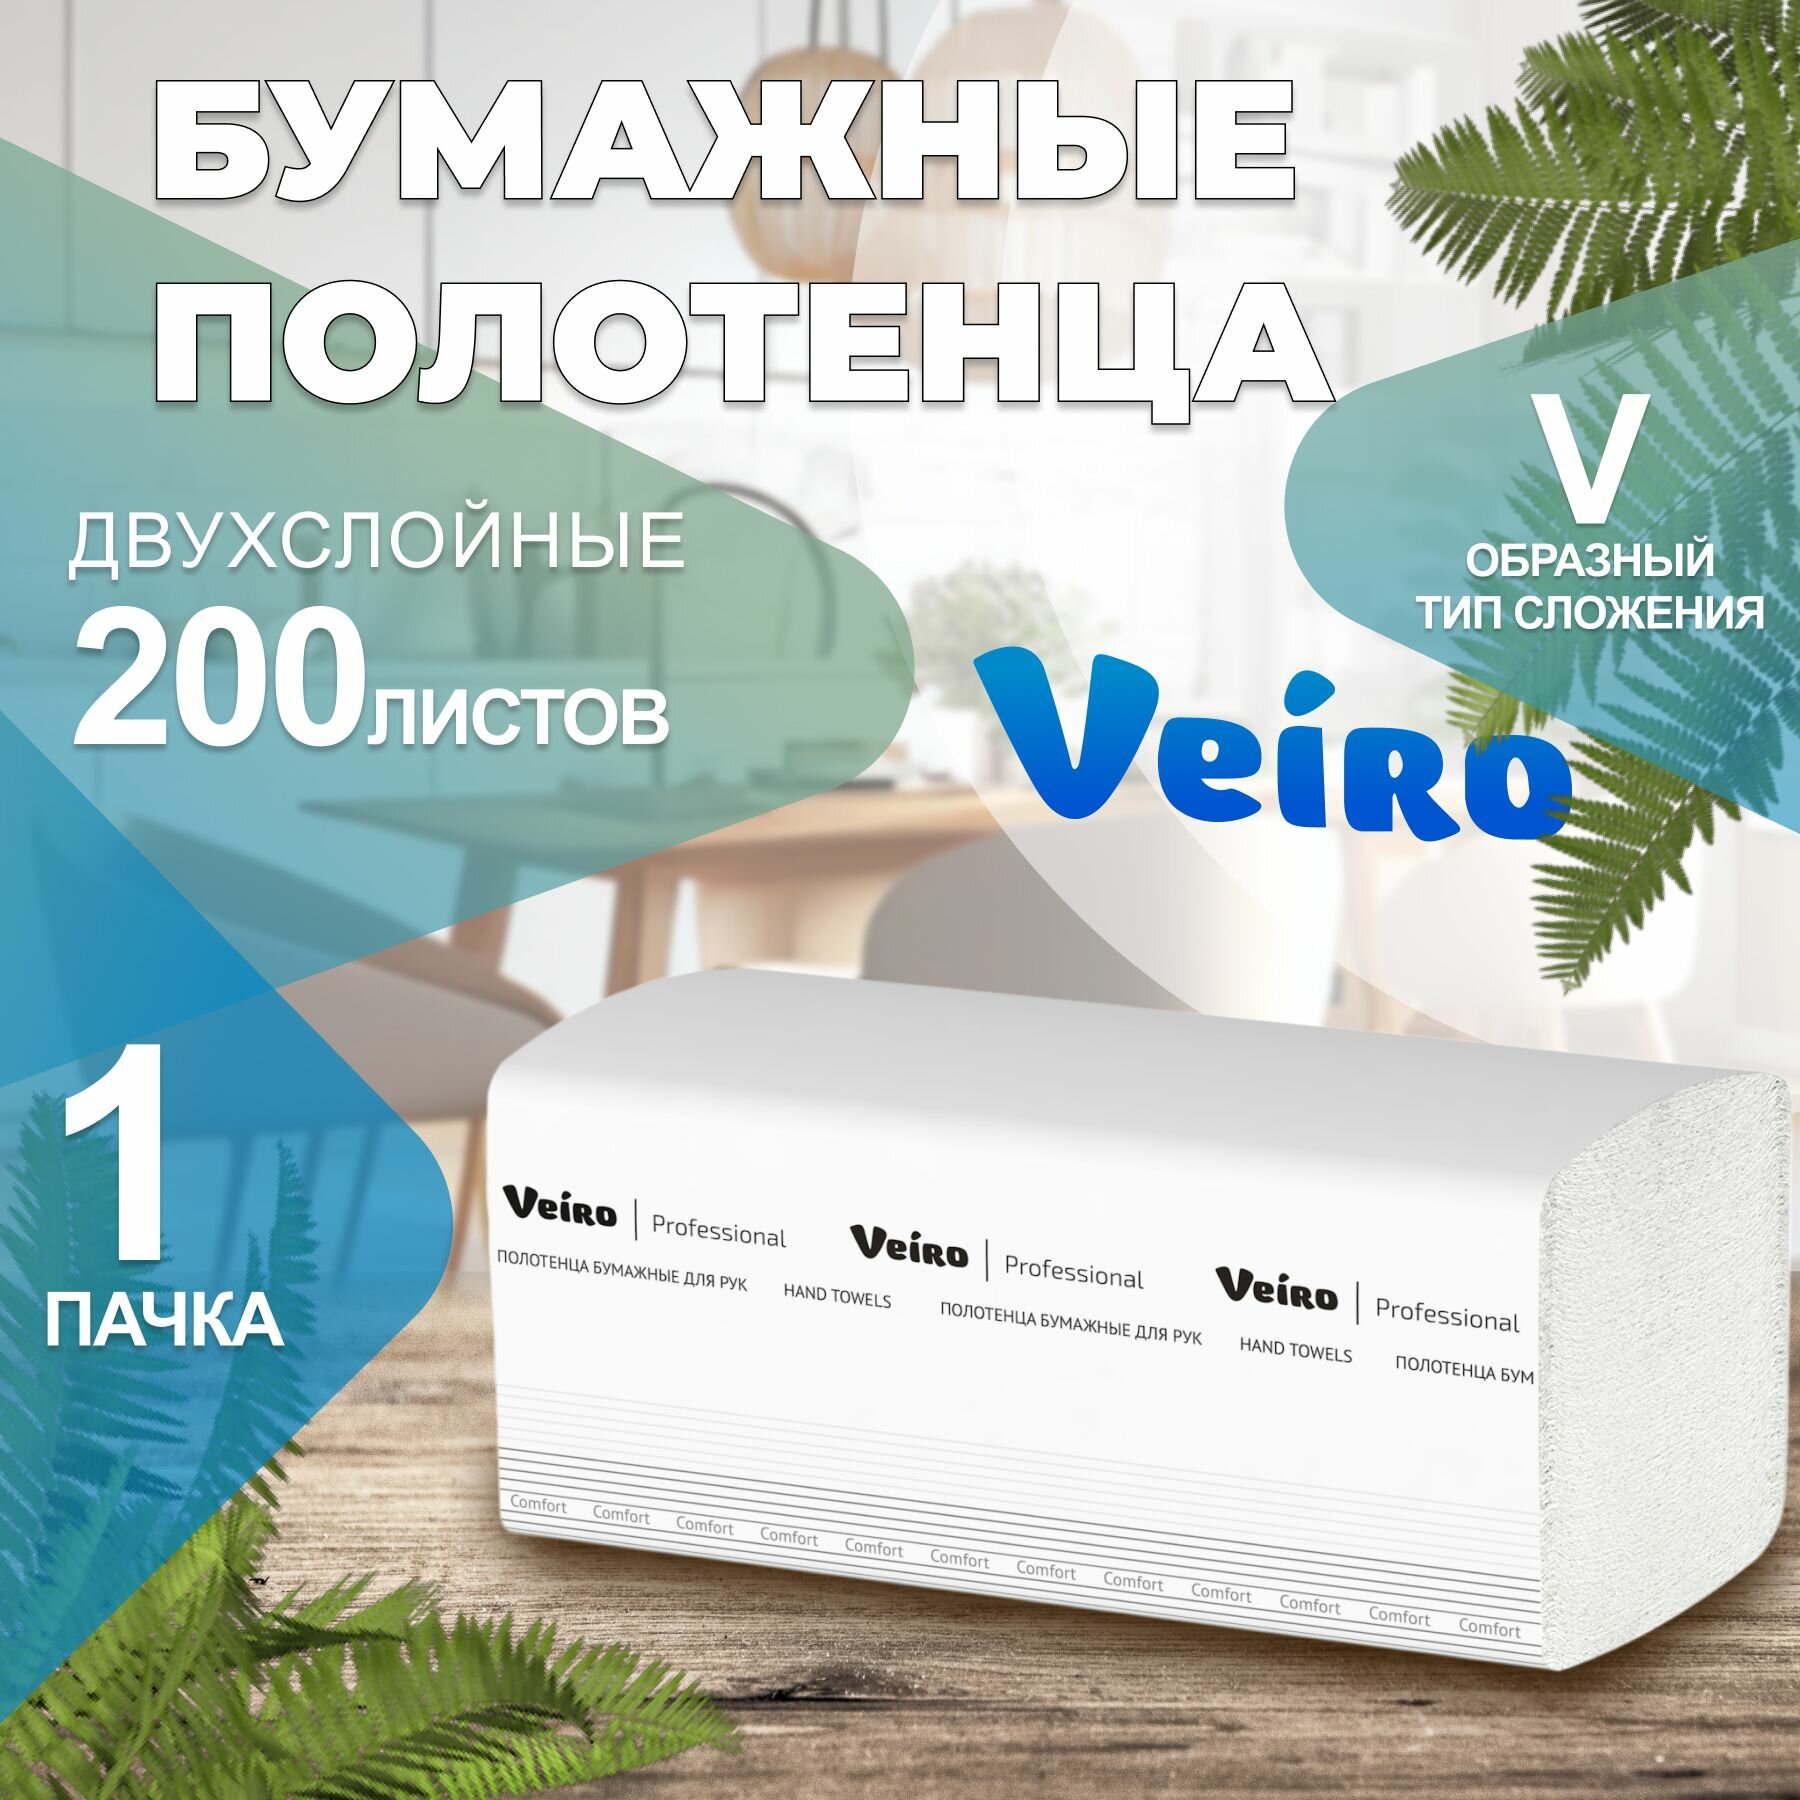 Бумажные полотенца в пачках Comfort Veiro Professional, 2 слоя, 200 листов, KV205, 1 пачка